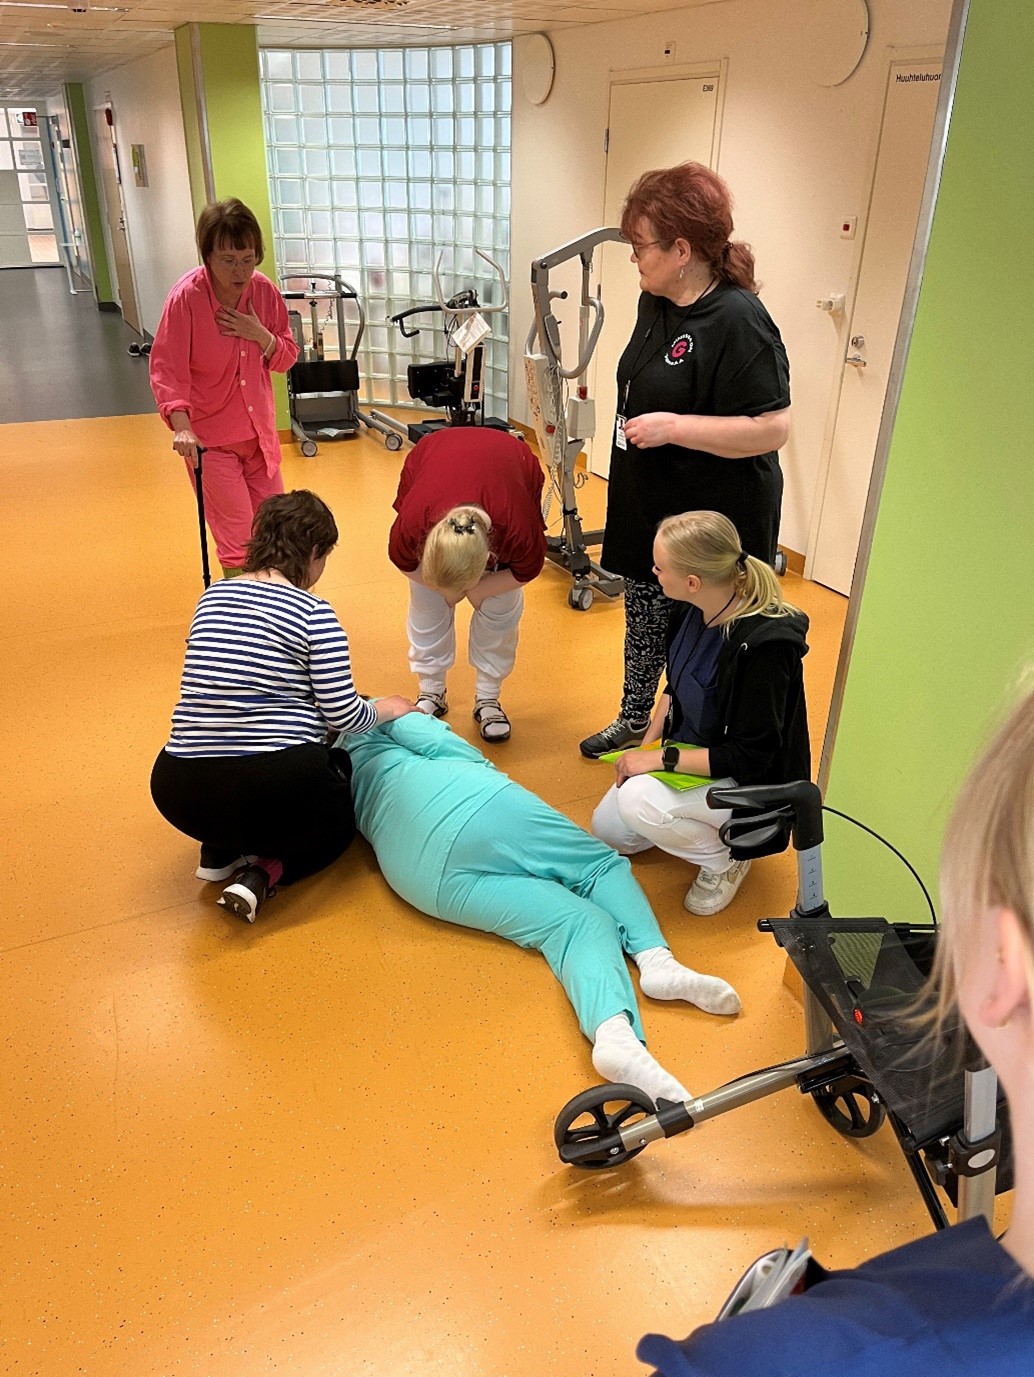 Potilas makaa lattialla, ympärillä henkilöitä auttamassa